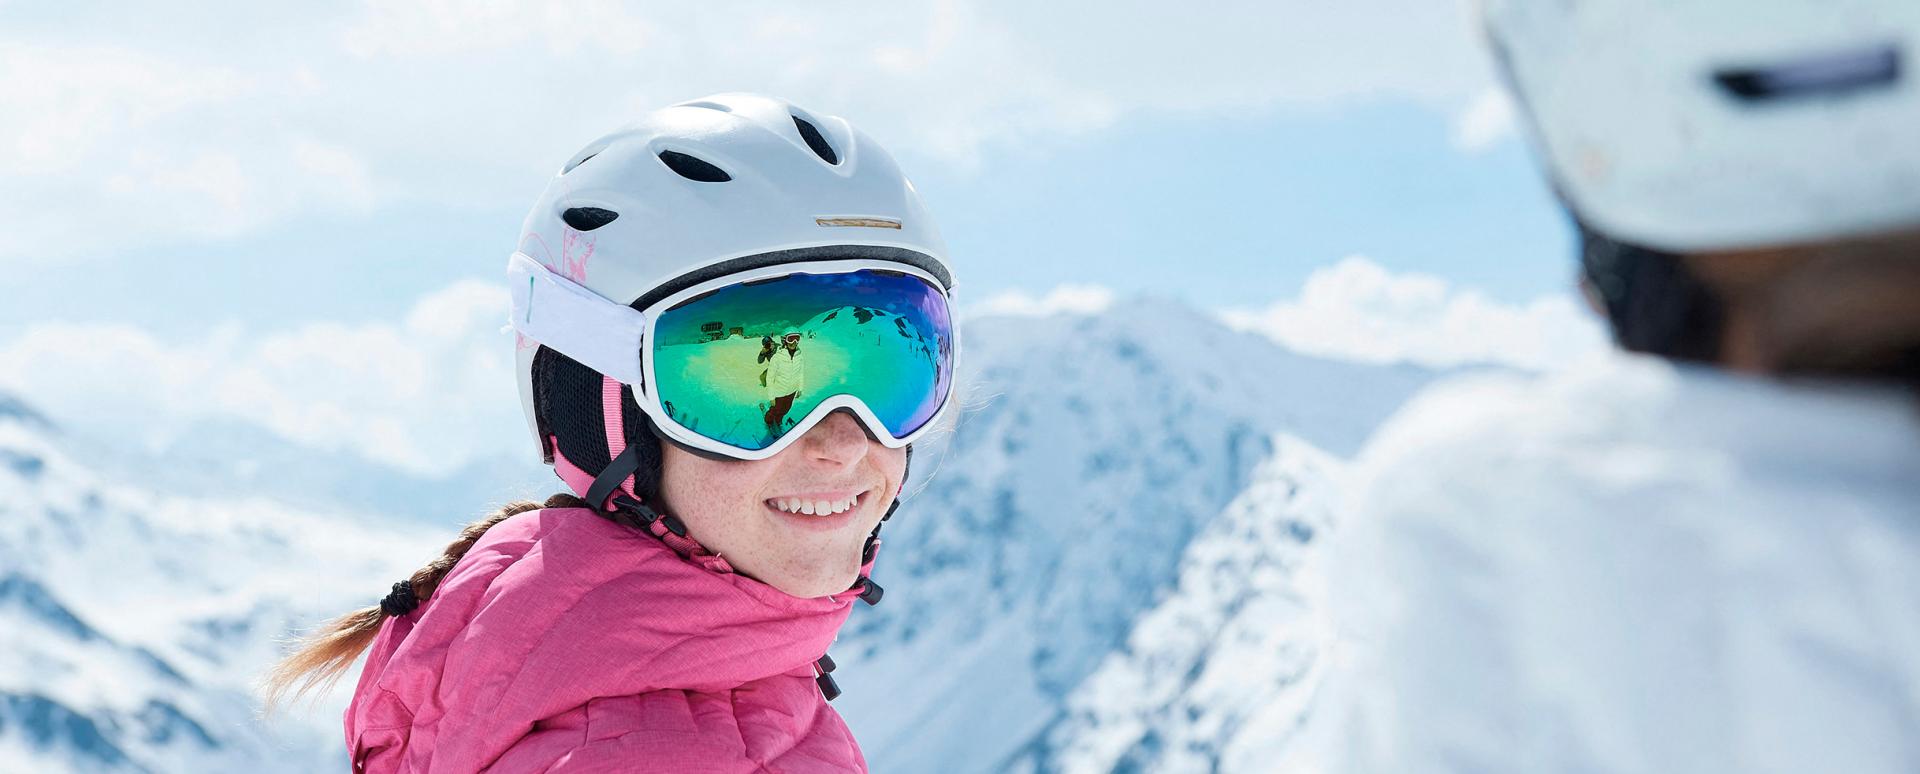 Une jeune fille regarde en souriant une autre personne sur une piste de ski